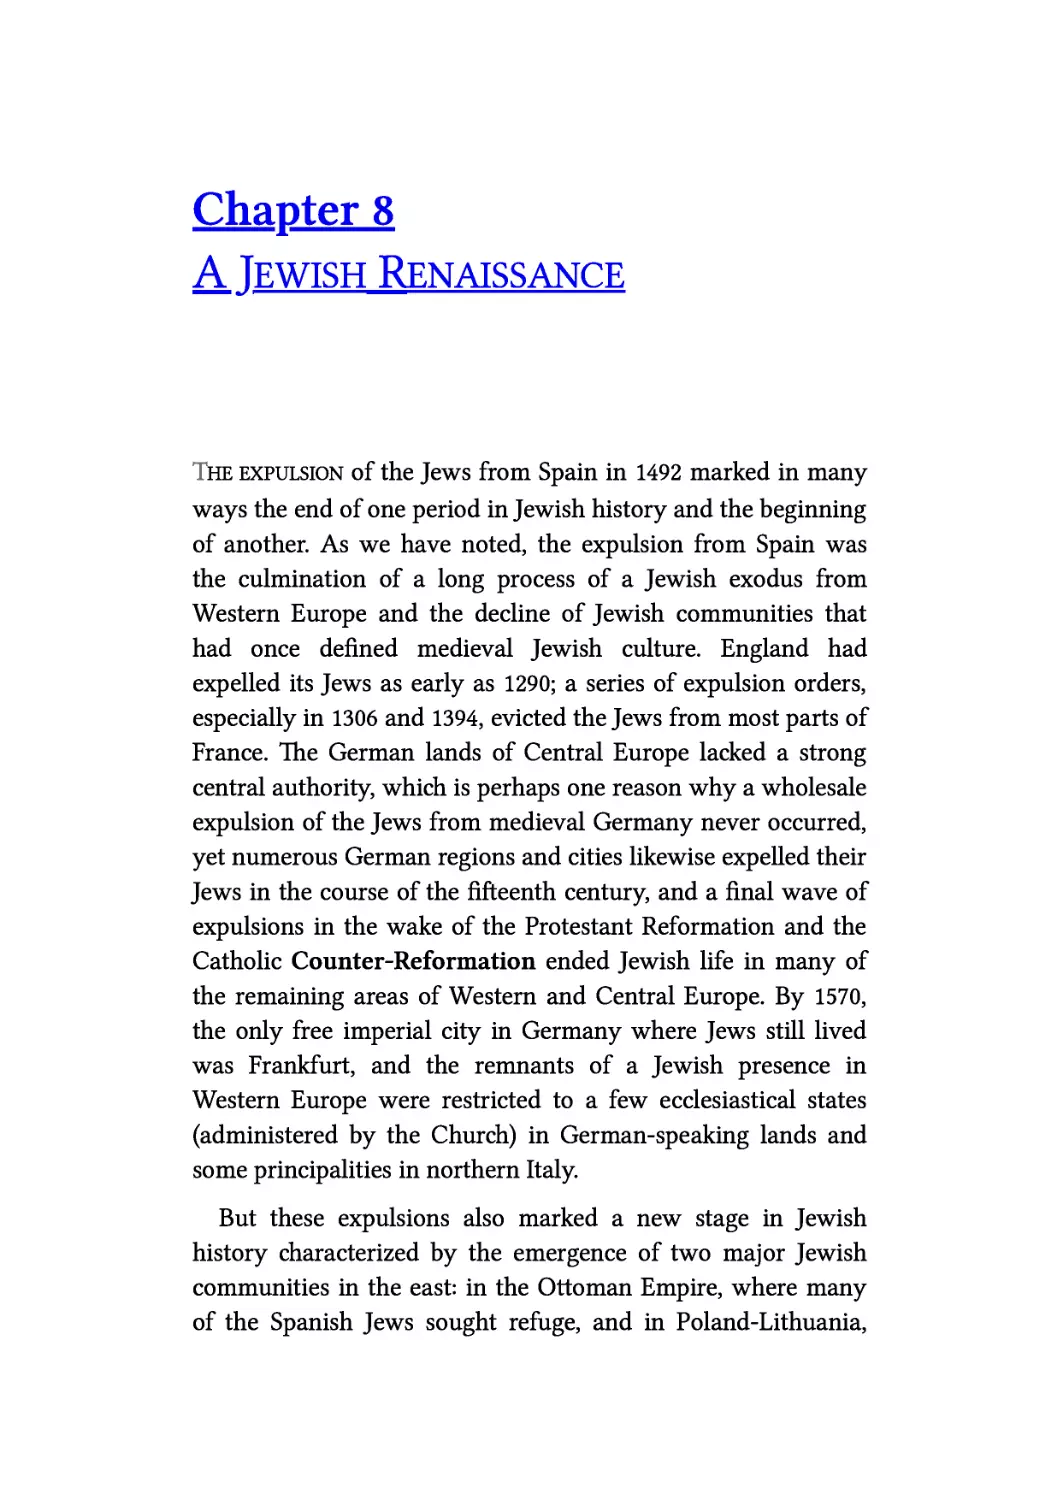 8. A Jewish Renaissance